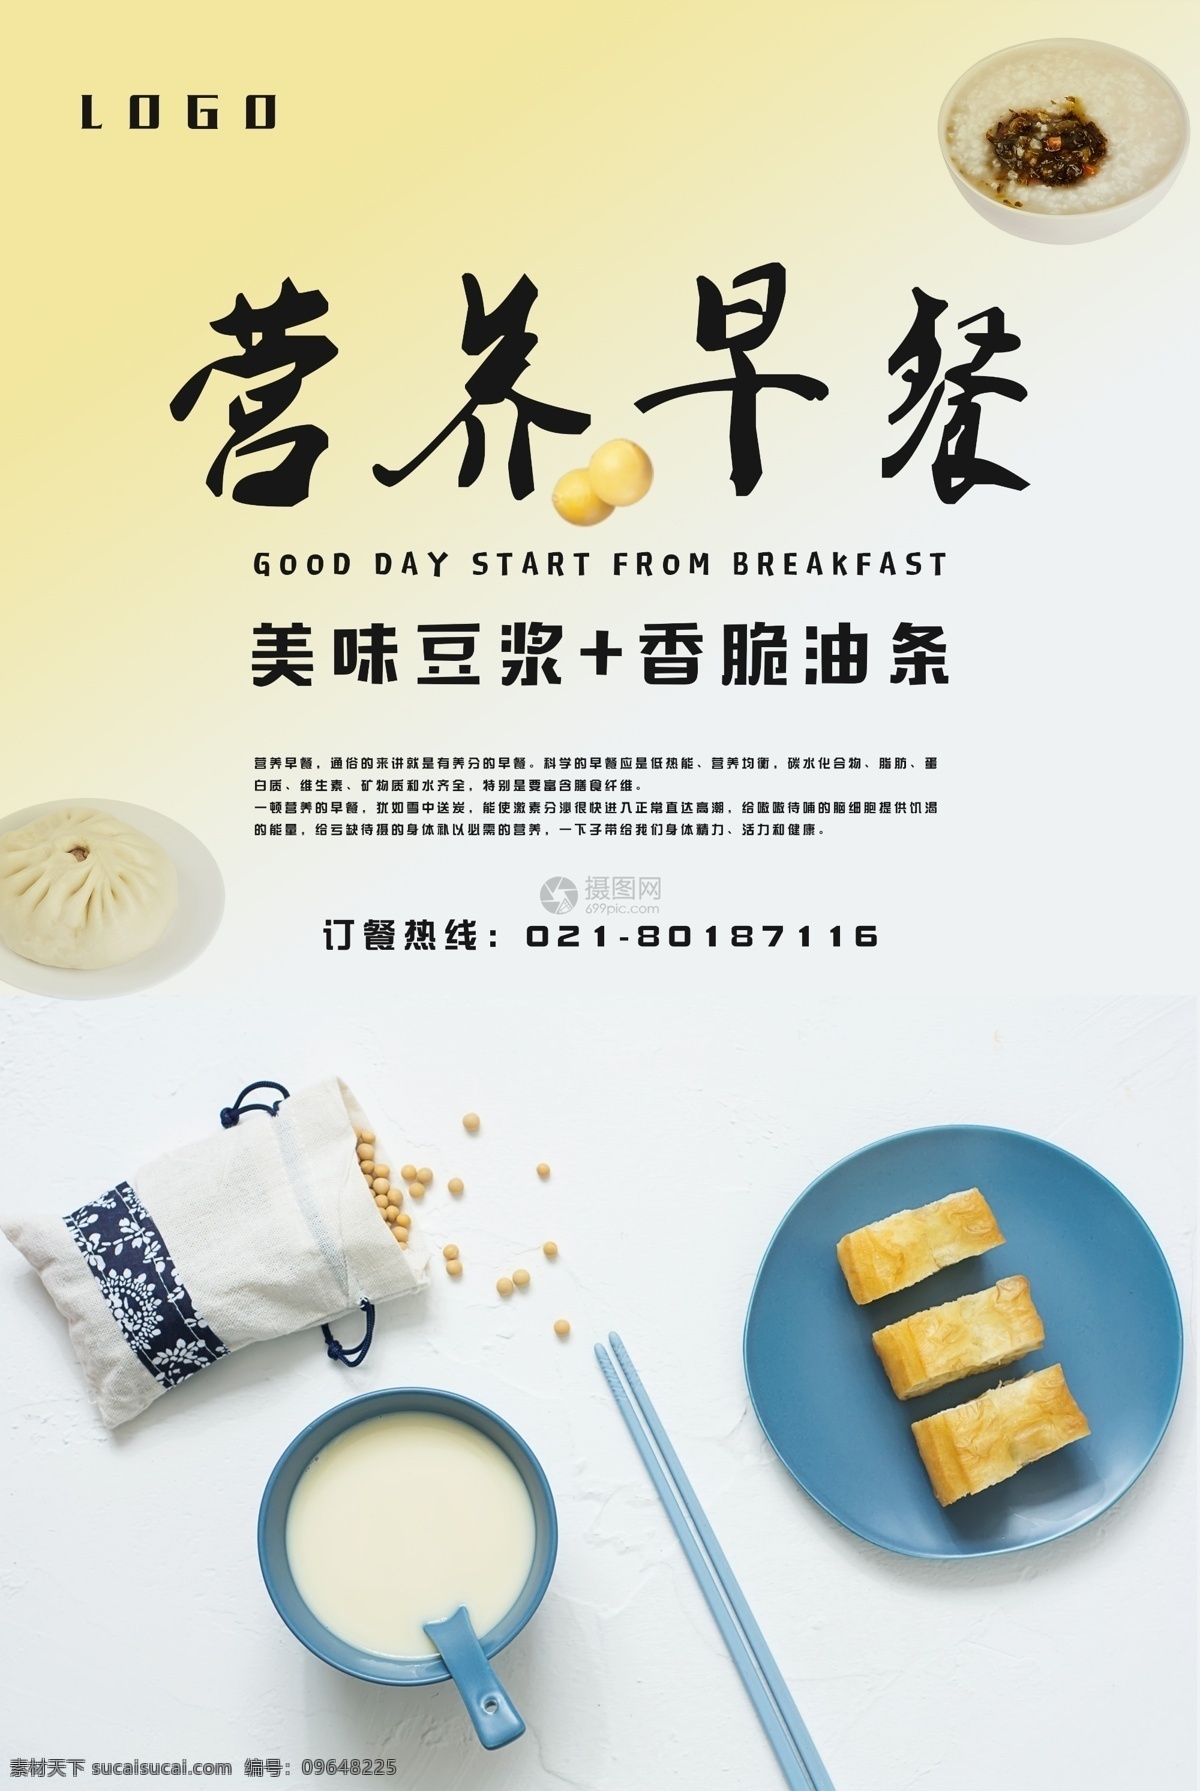 健康 营养 早餐 海报 营养早餐 豆浆 美食 宣传 饭店 早点 早饭 食物 油条 美食餐饮 餐饮行业